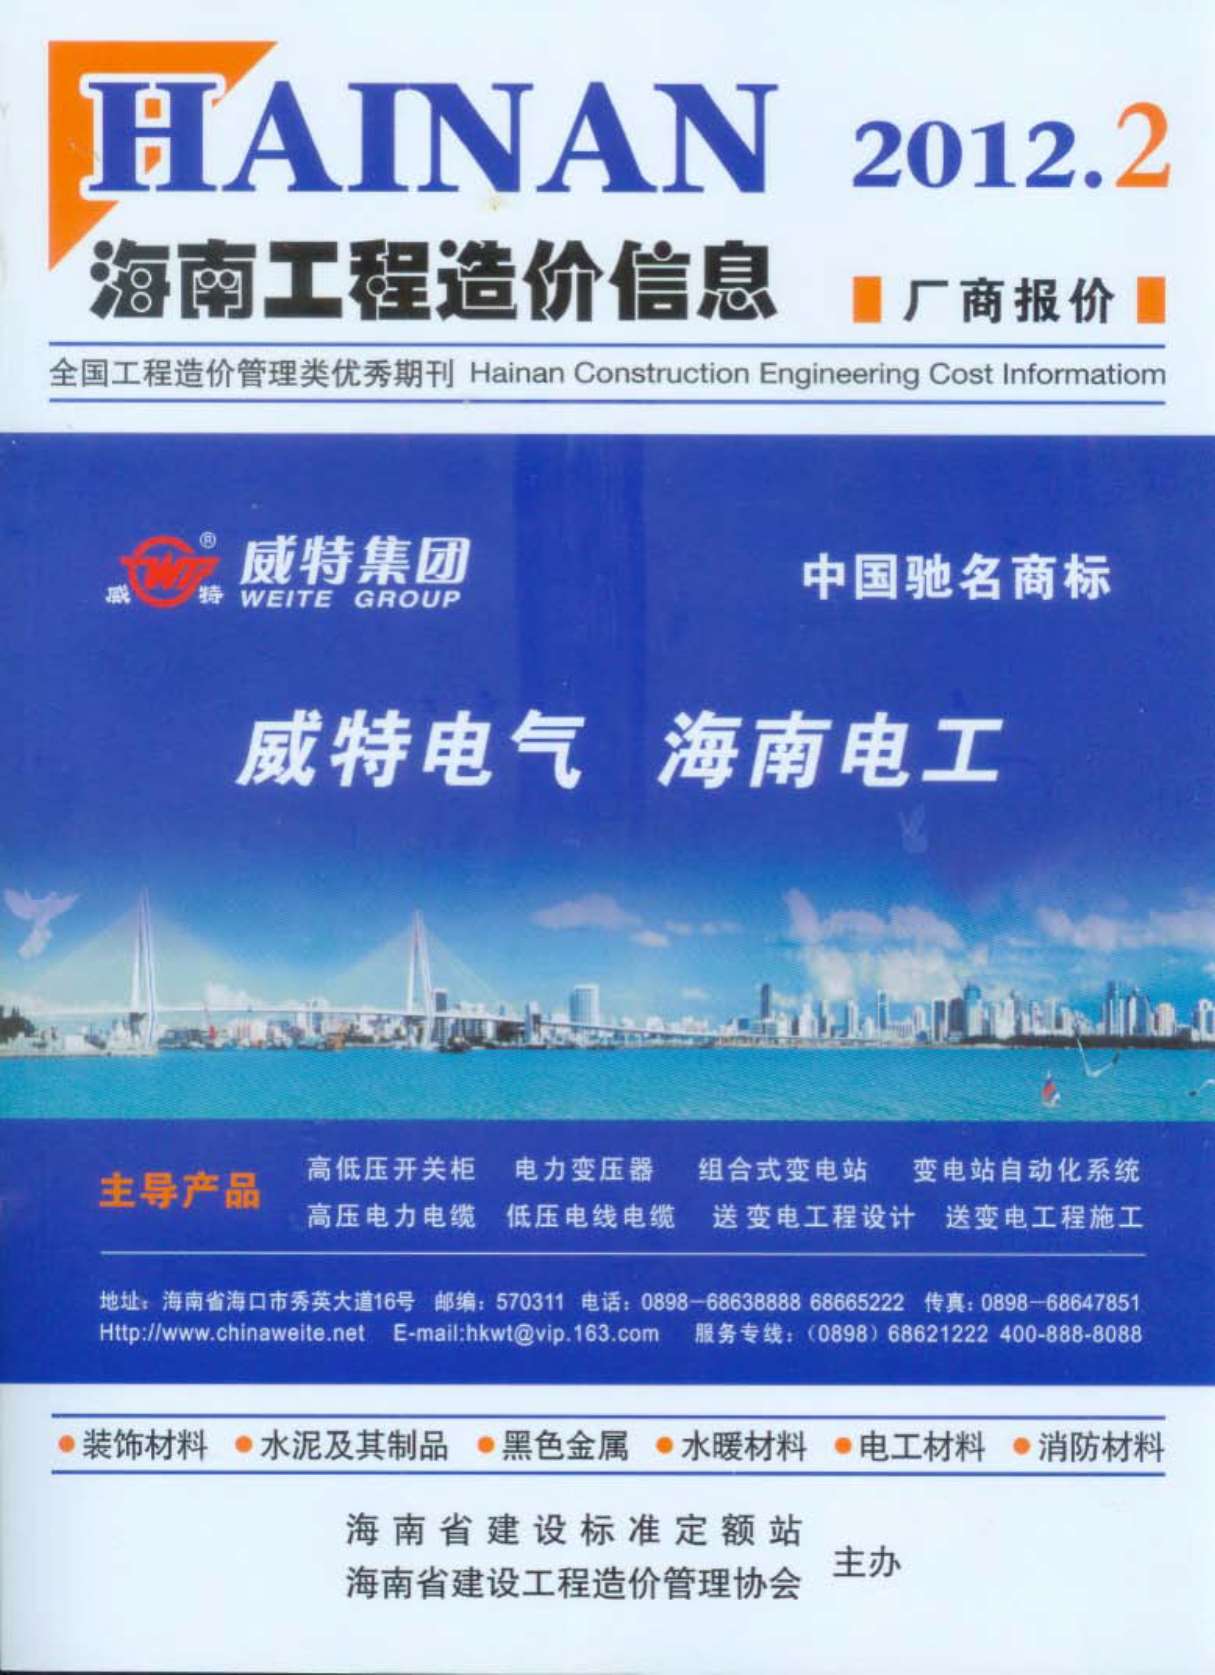 海南省2012年2月造价信息库